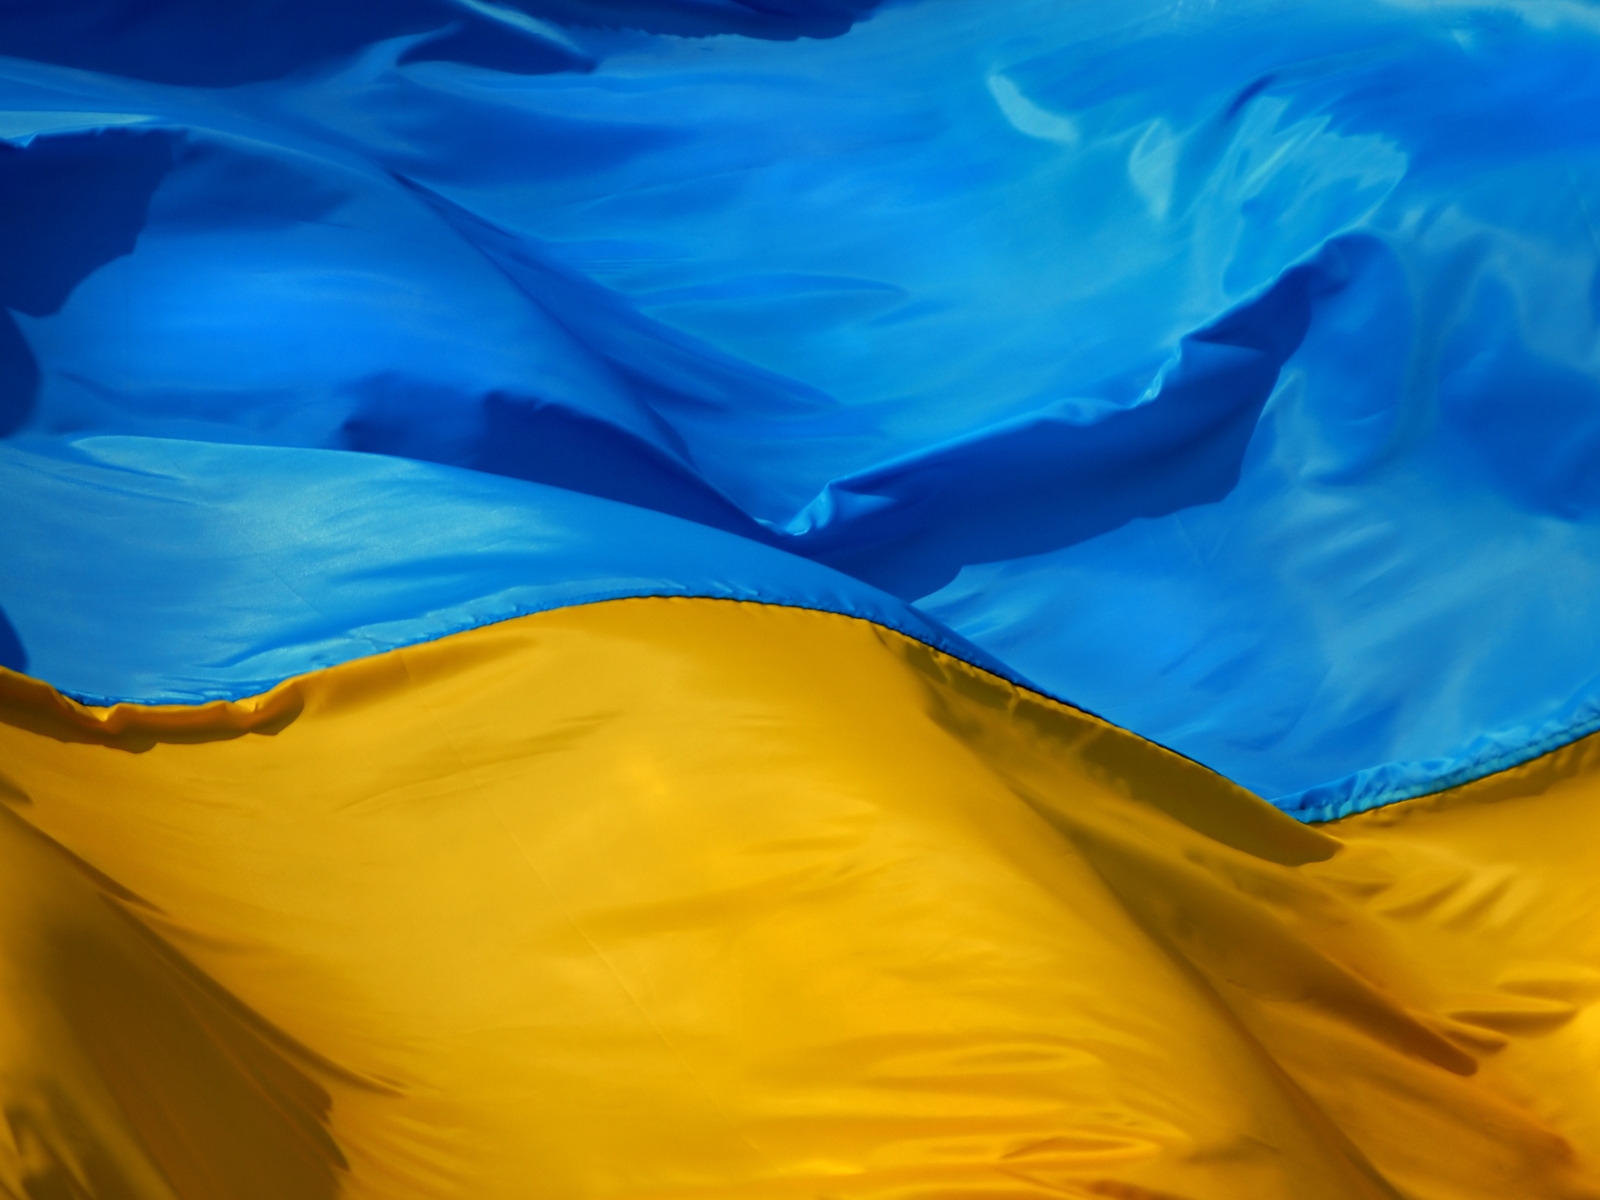 Ukraine Flag for 1600 x 1200 resolution